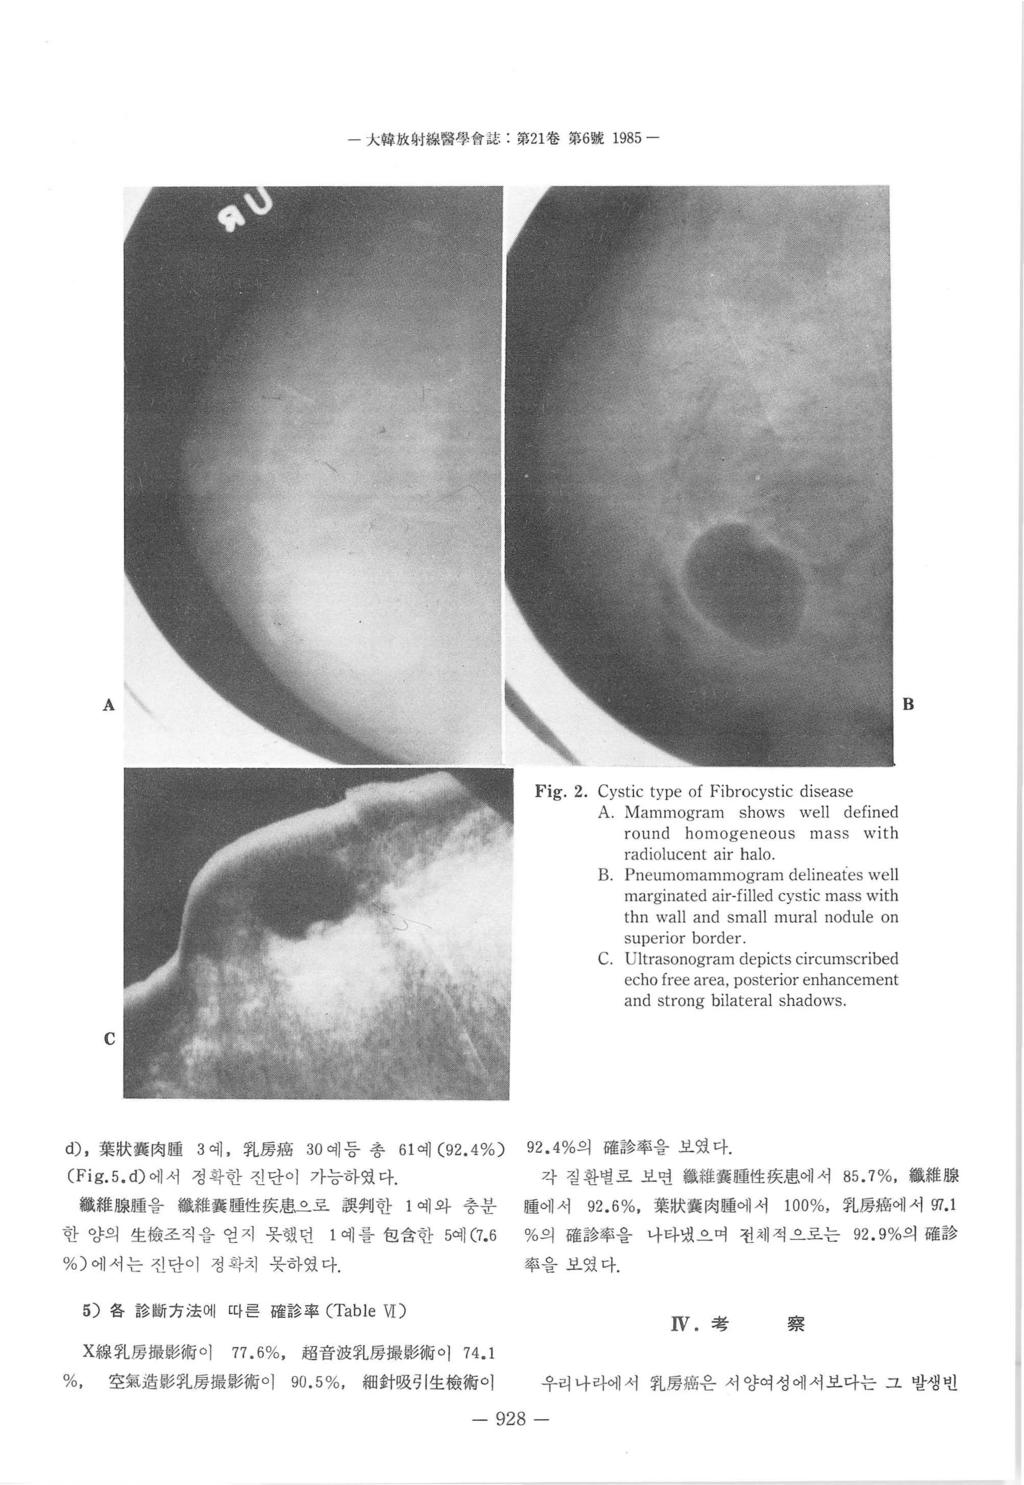 太웹 JíX M Mtl 양용짱 1'1- 쉽第 1 卷第 6 跳 1985 - A B Fig.. Cystic type of Fibrocystic disease A. Mammogram shows well defined round homoge neous mass with radiolucent air halo B.